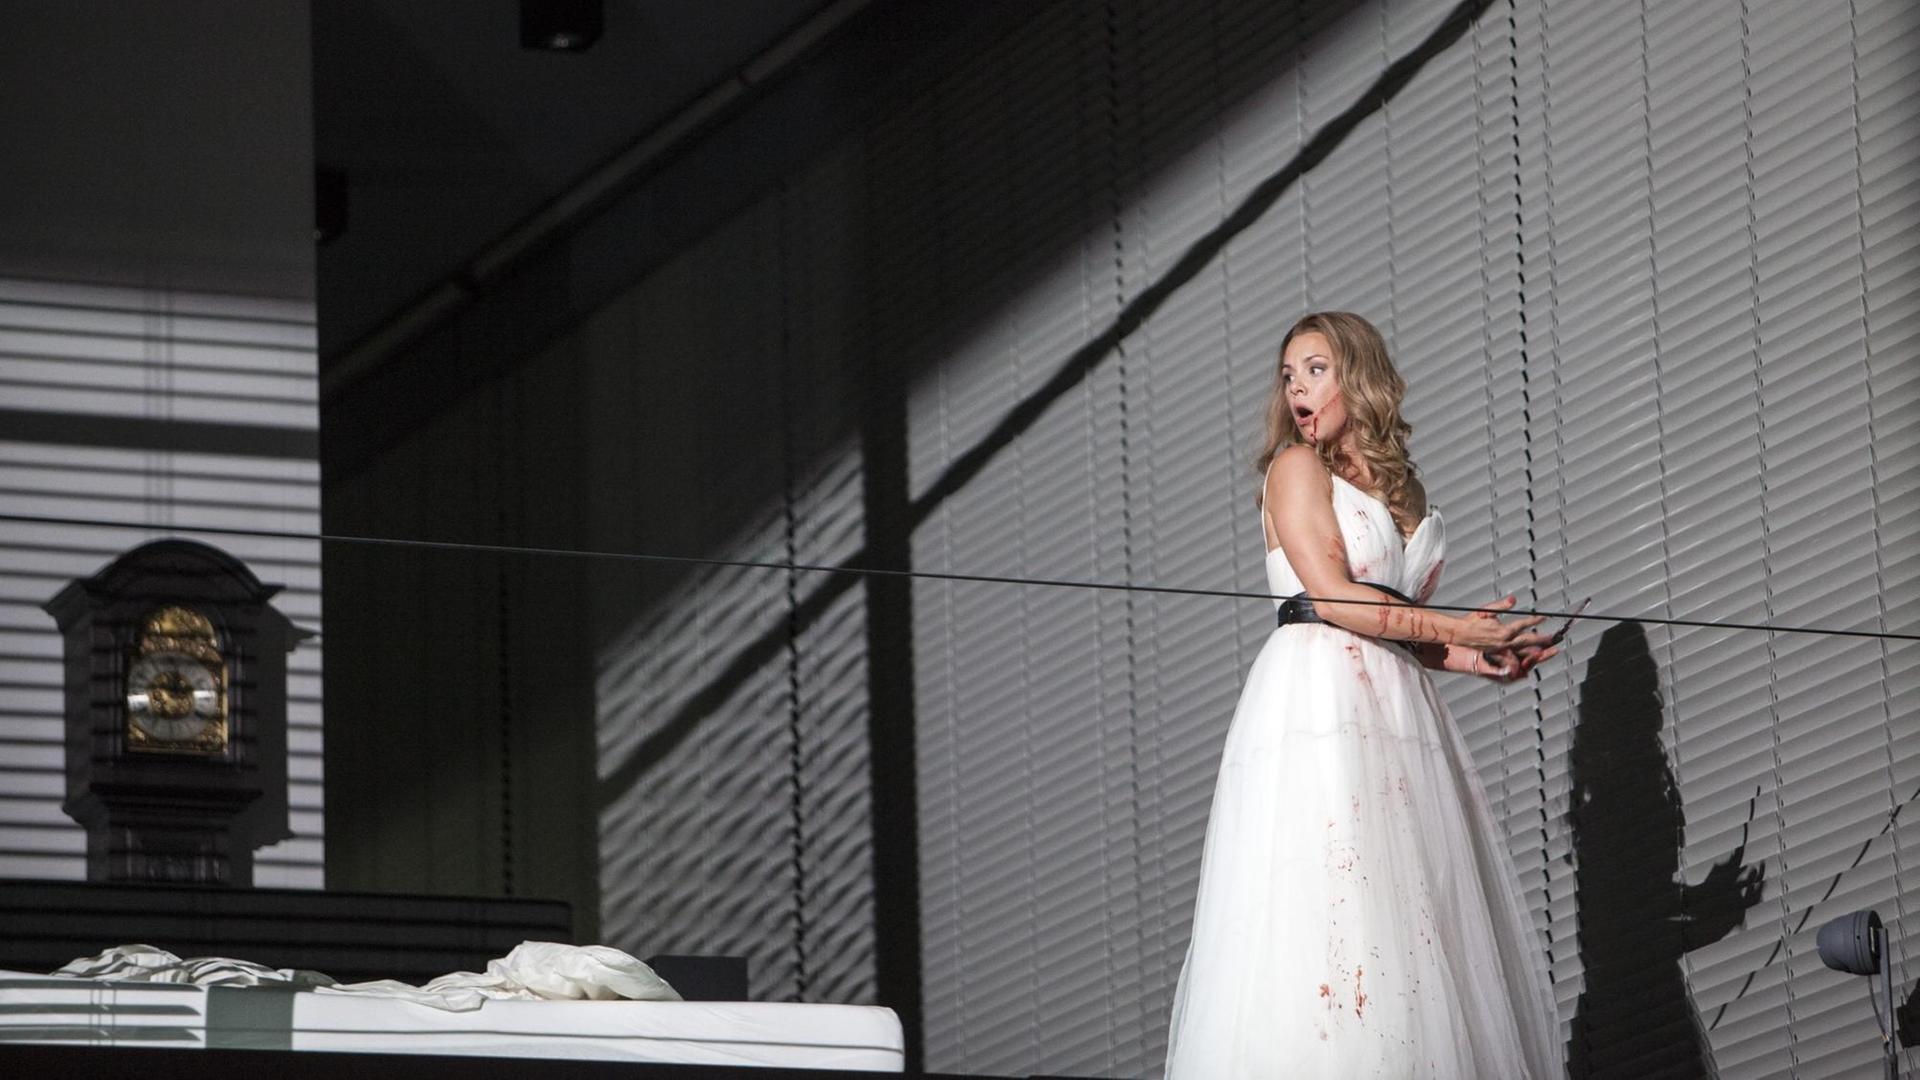 Die niederländische Sopranistin Lenneke Ruiten singt in Mozarts Oper "Lucia Silla" die Rolle der Giunia